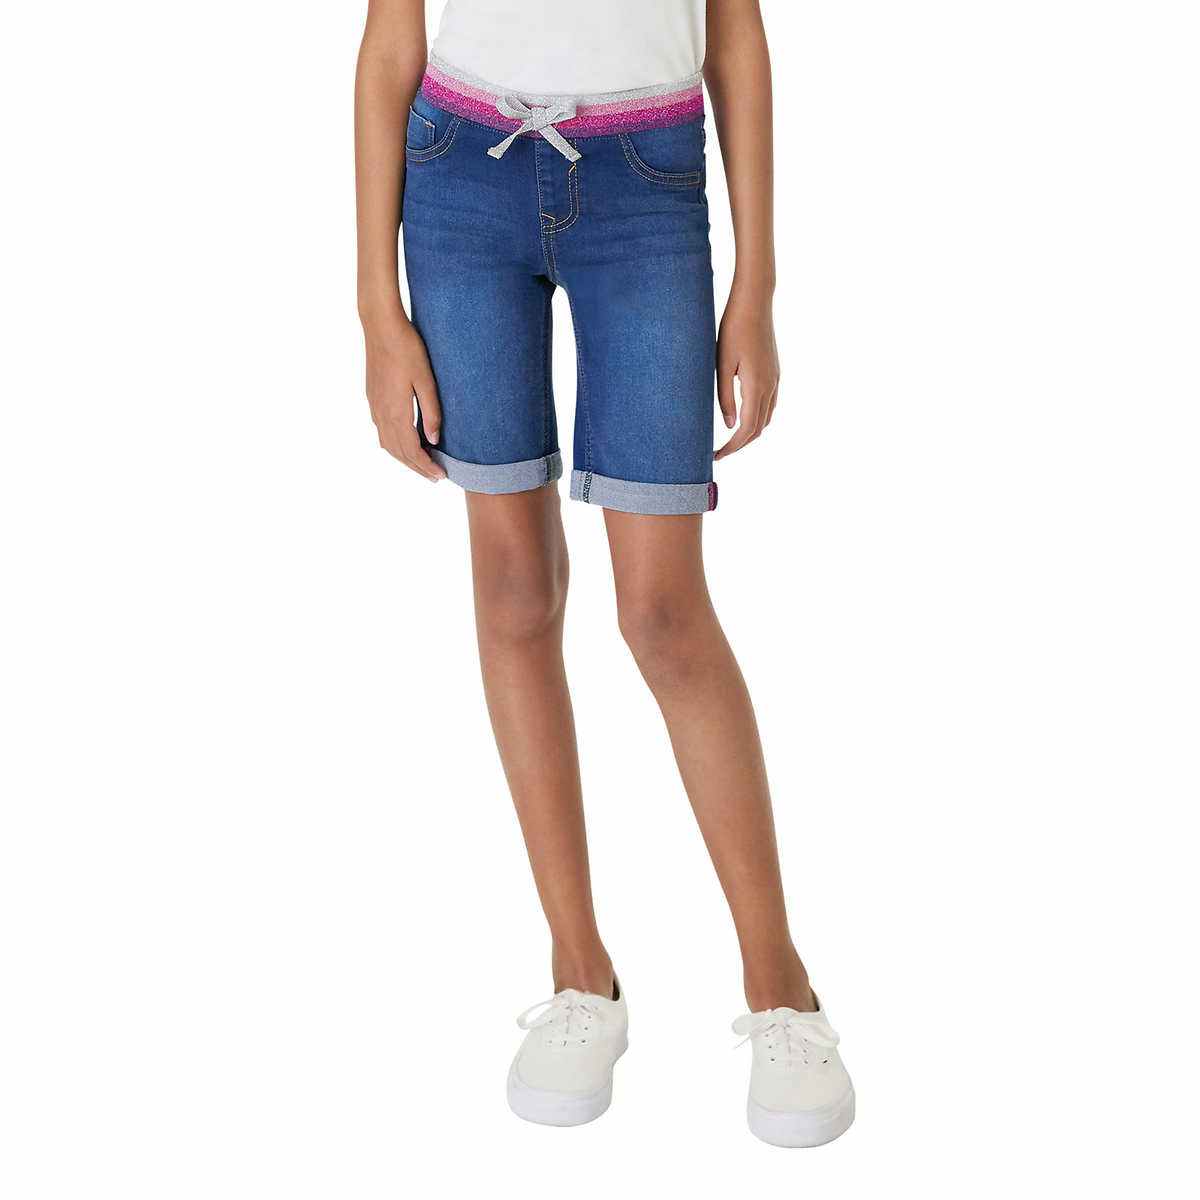 youth bermuda shorts